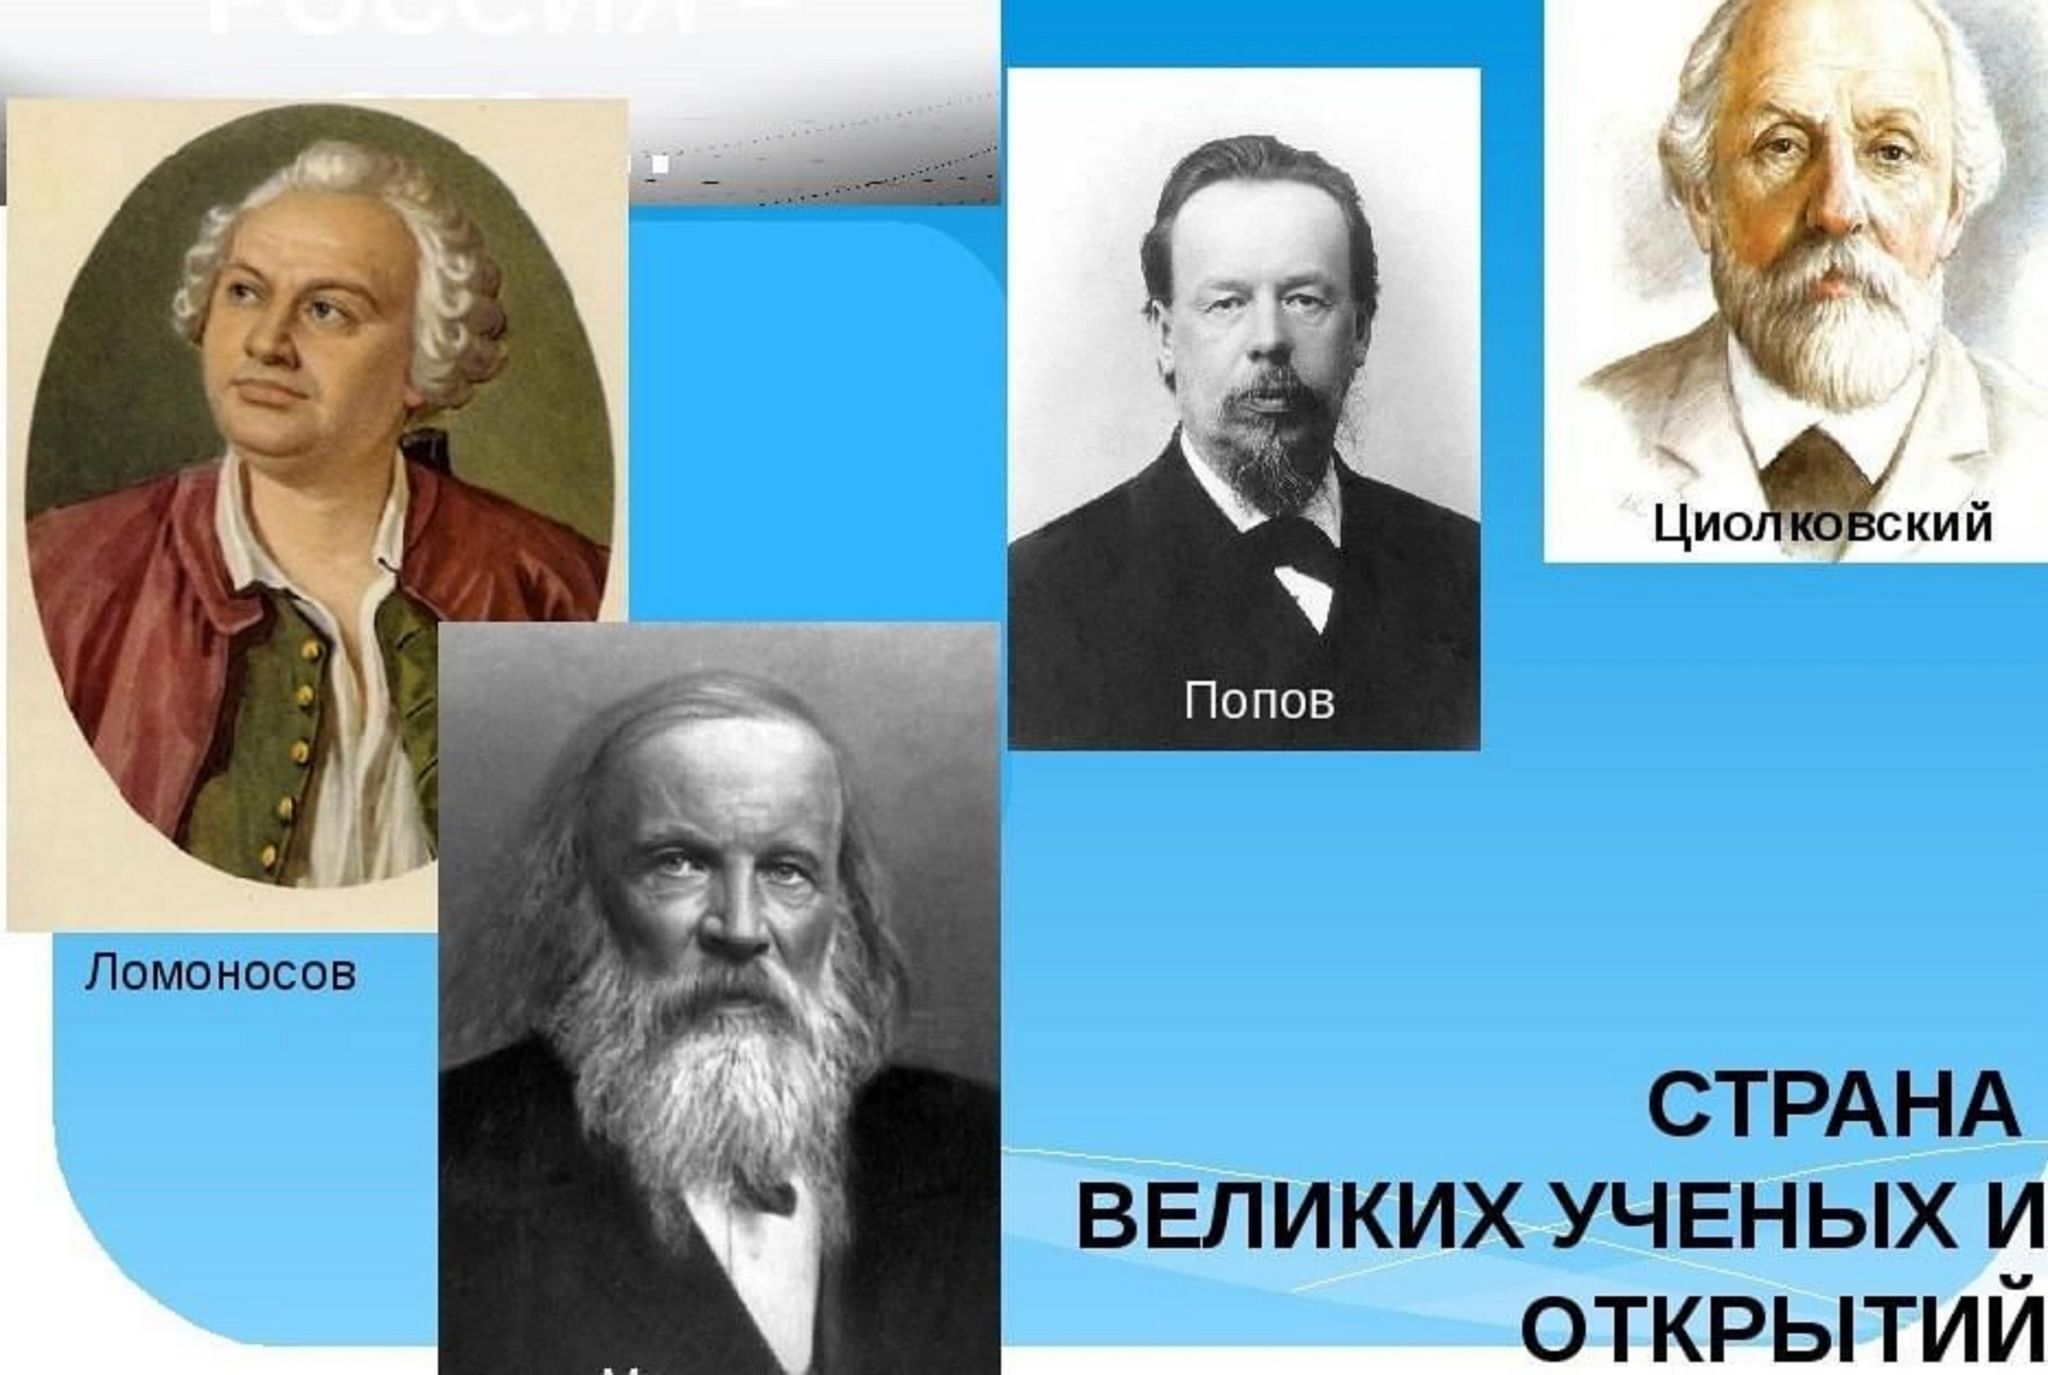 Великие ученые России